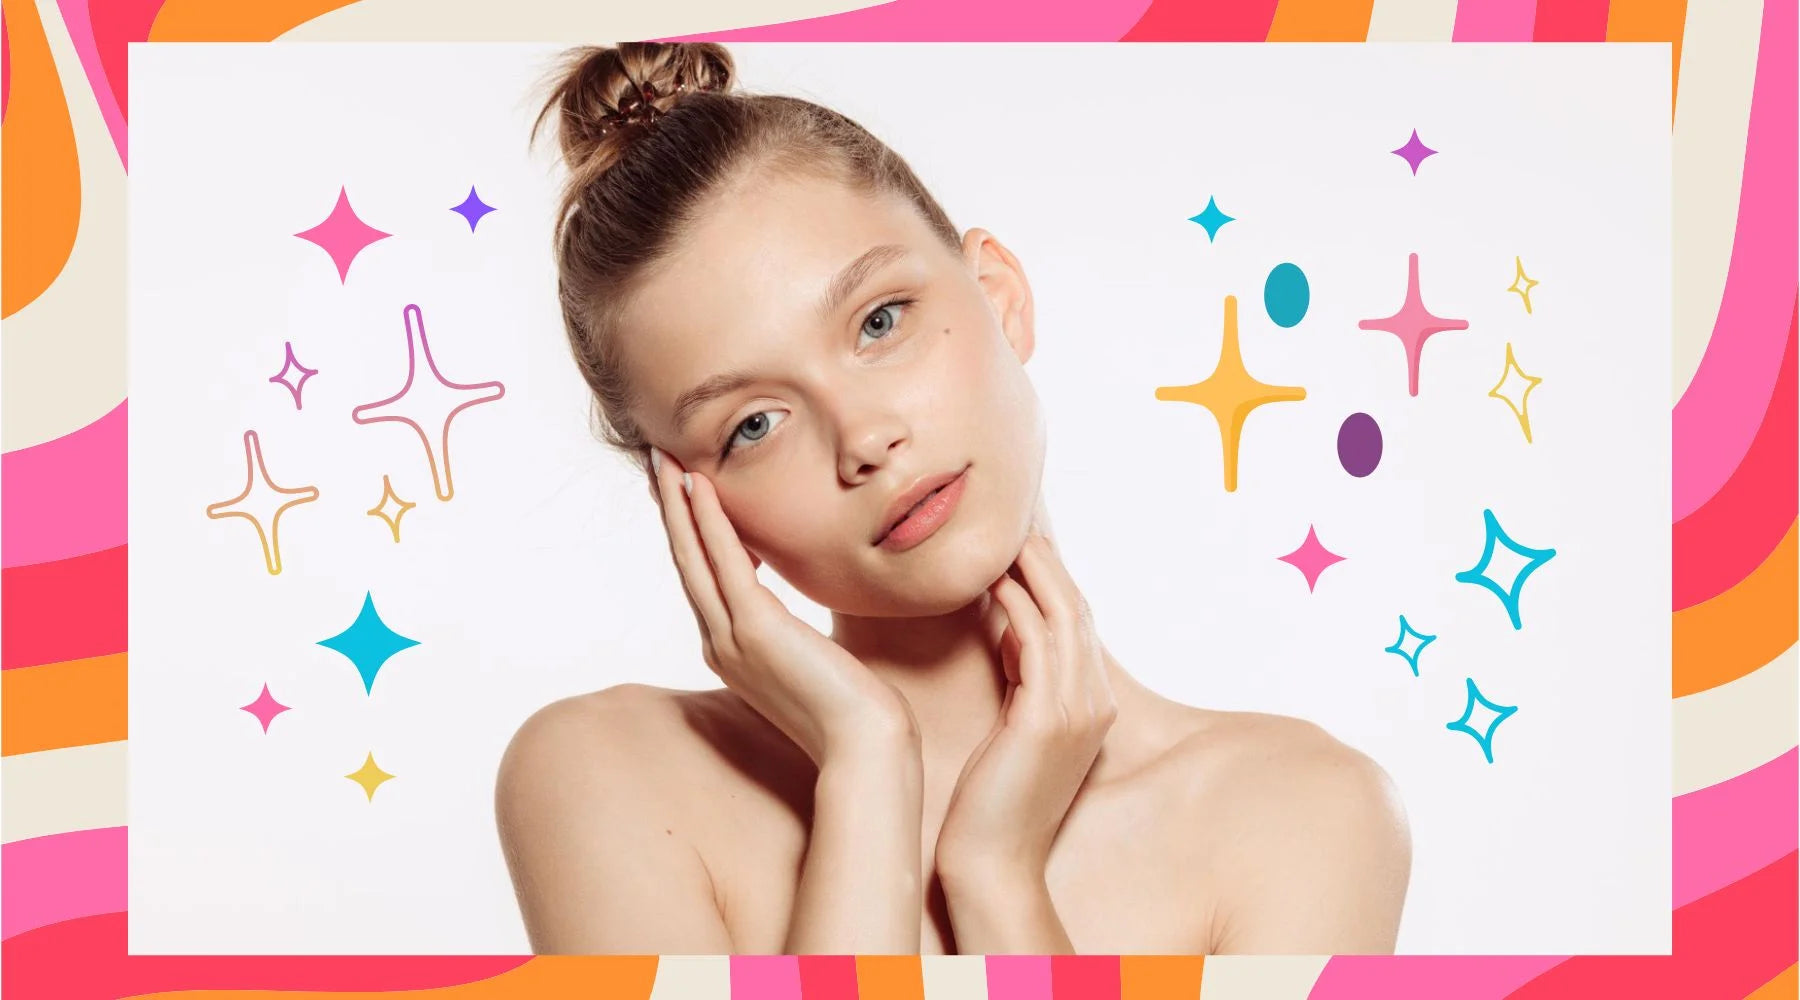 Beste huidverzorgingsroutine & Tips voor een droge, gedehydrateerde huid op het gezicht Moisturizer Gezichtsolie Ceramiden Bevochtiger Hyaluronzuur Reinigingsoliën Make-up K Beauty World   